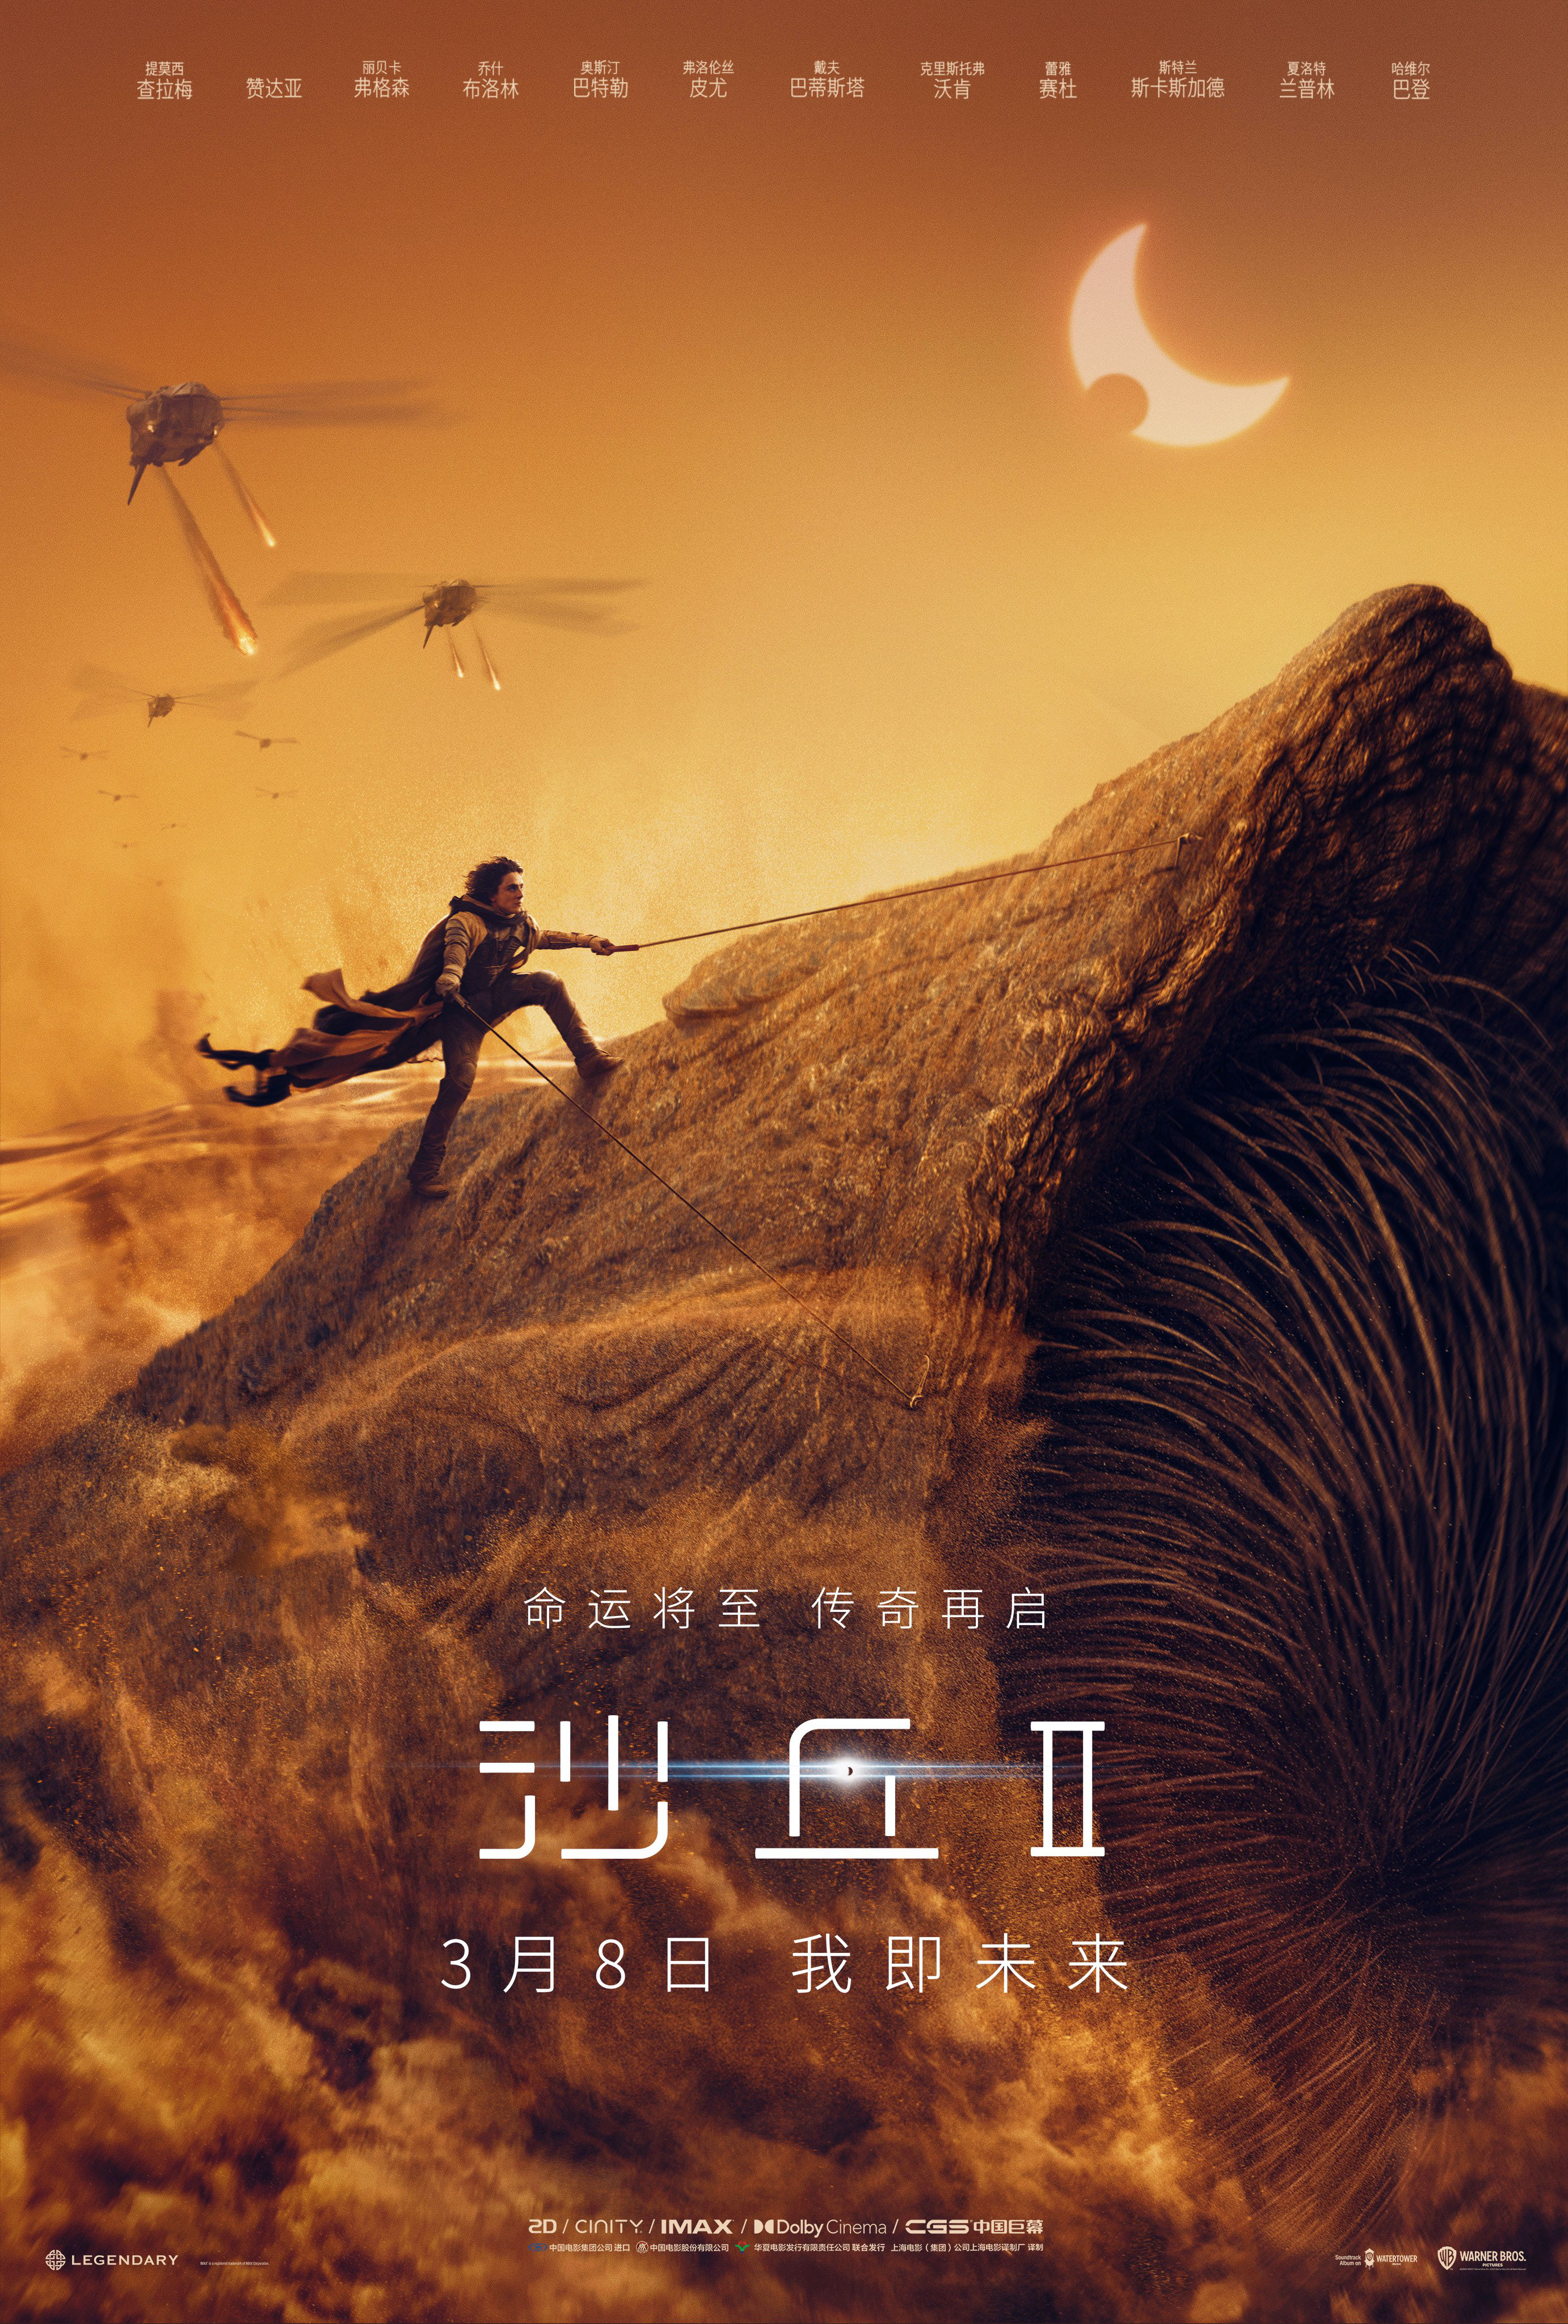 科幻巨制《沙丘2》发布中国独家预告 3.8全国公映